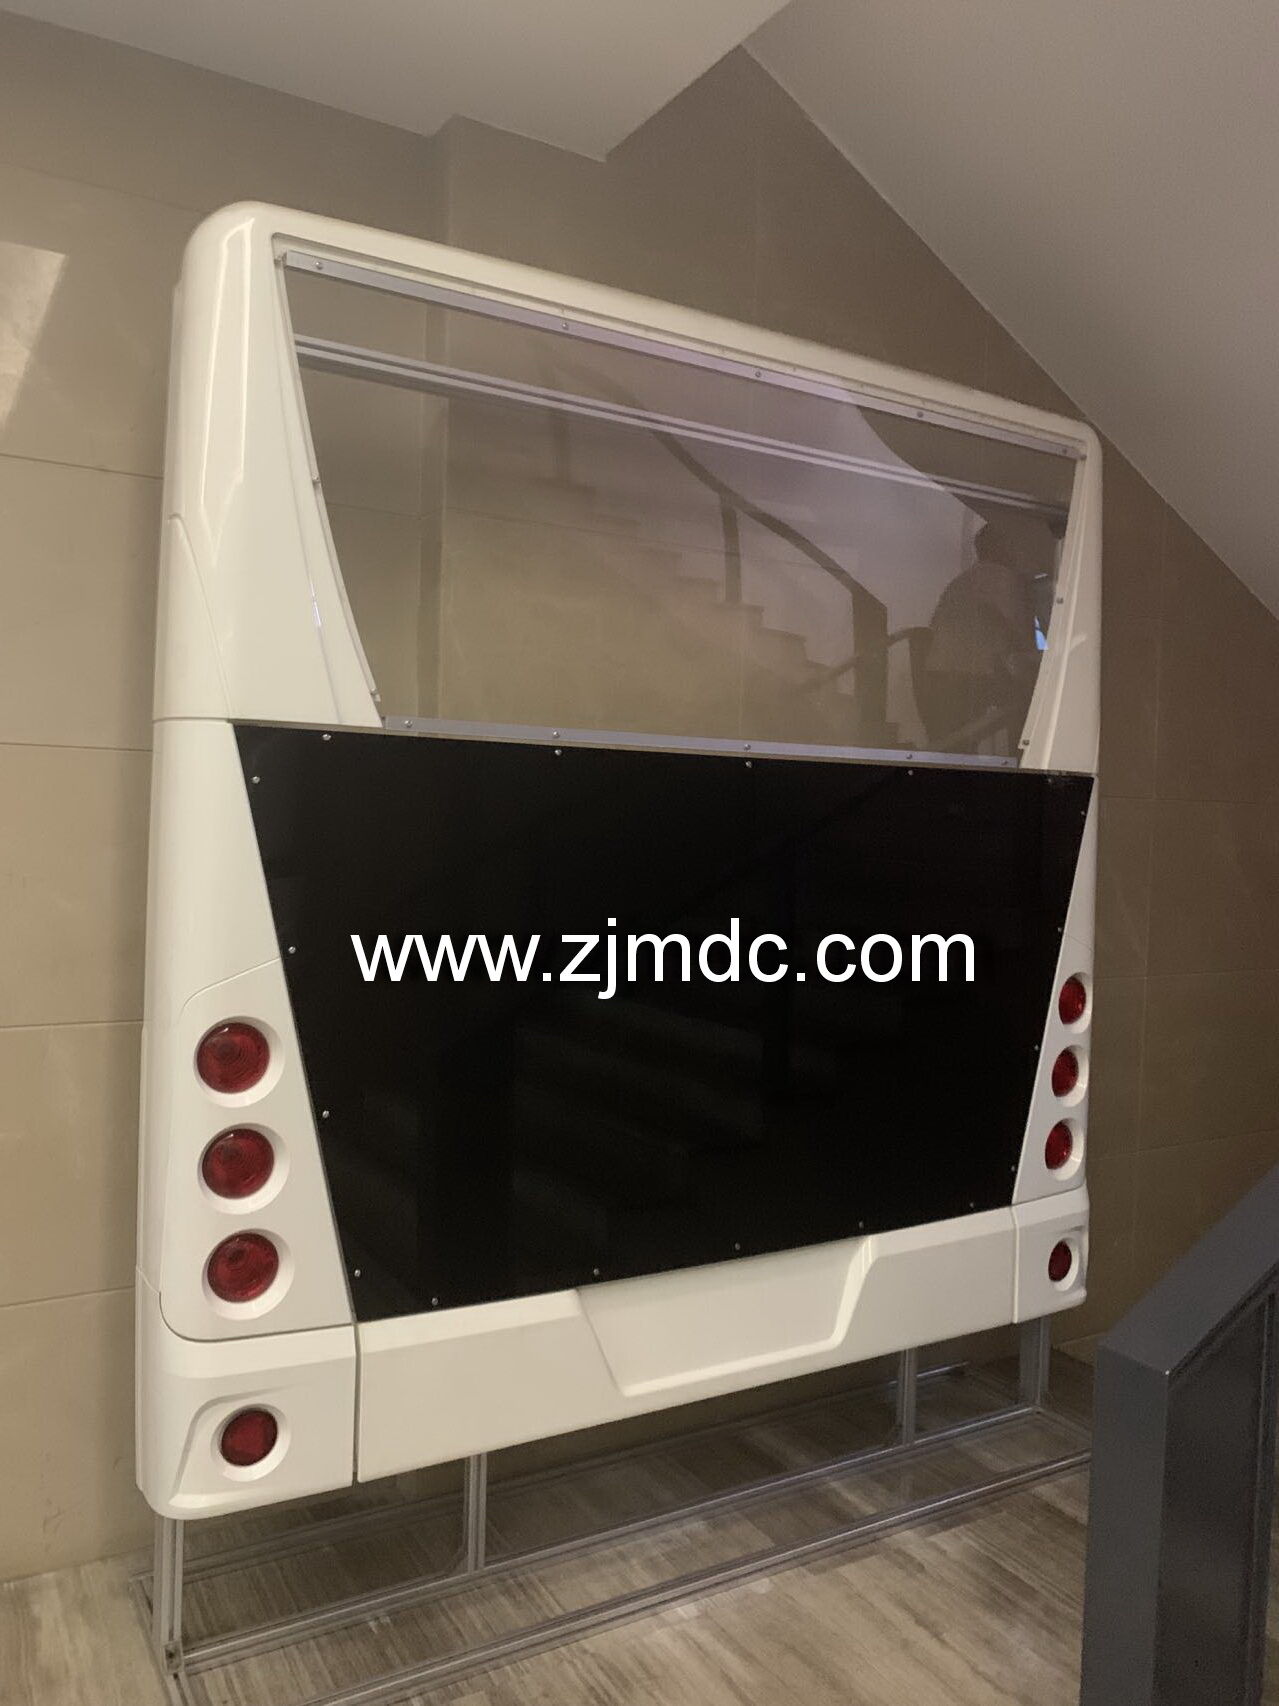 SMC city bus mold project case